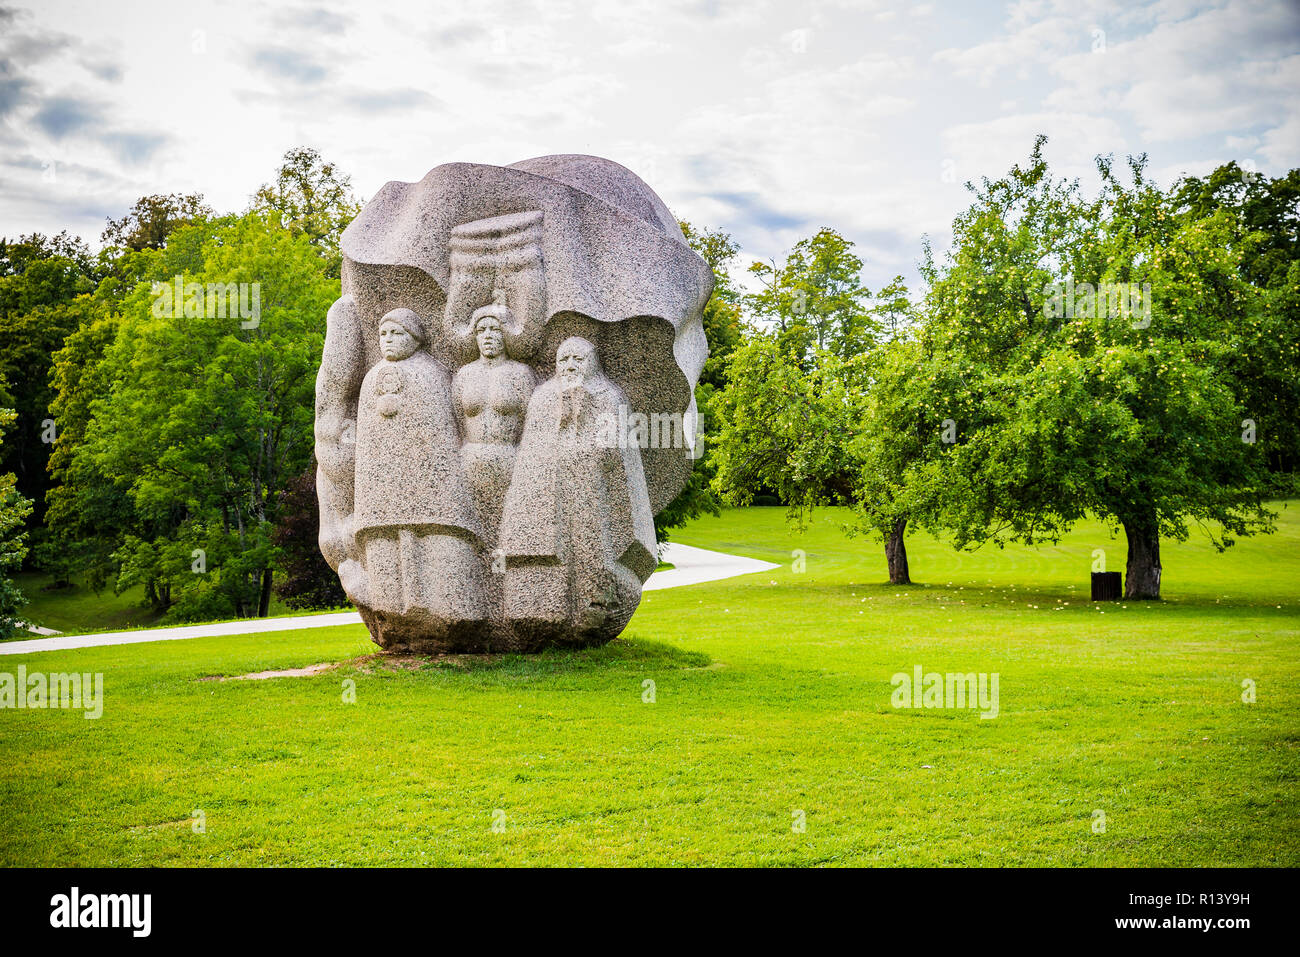 Folk Song Park bietet eine Permamente Ausstellung von indulis Ranka Skulptur. Museumsreservat Turaida, Sigulda, Lettland, Baltikum, Europa. Stockfoto